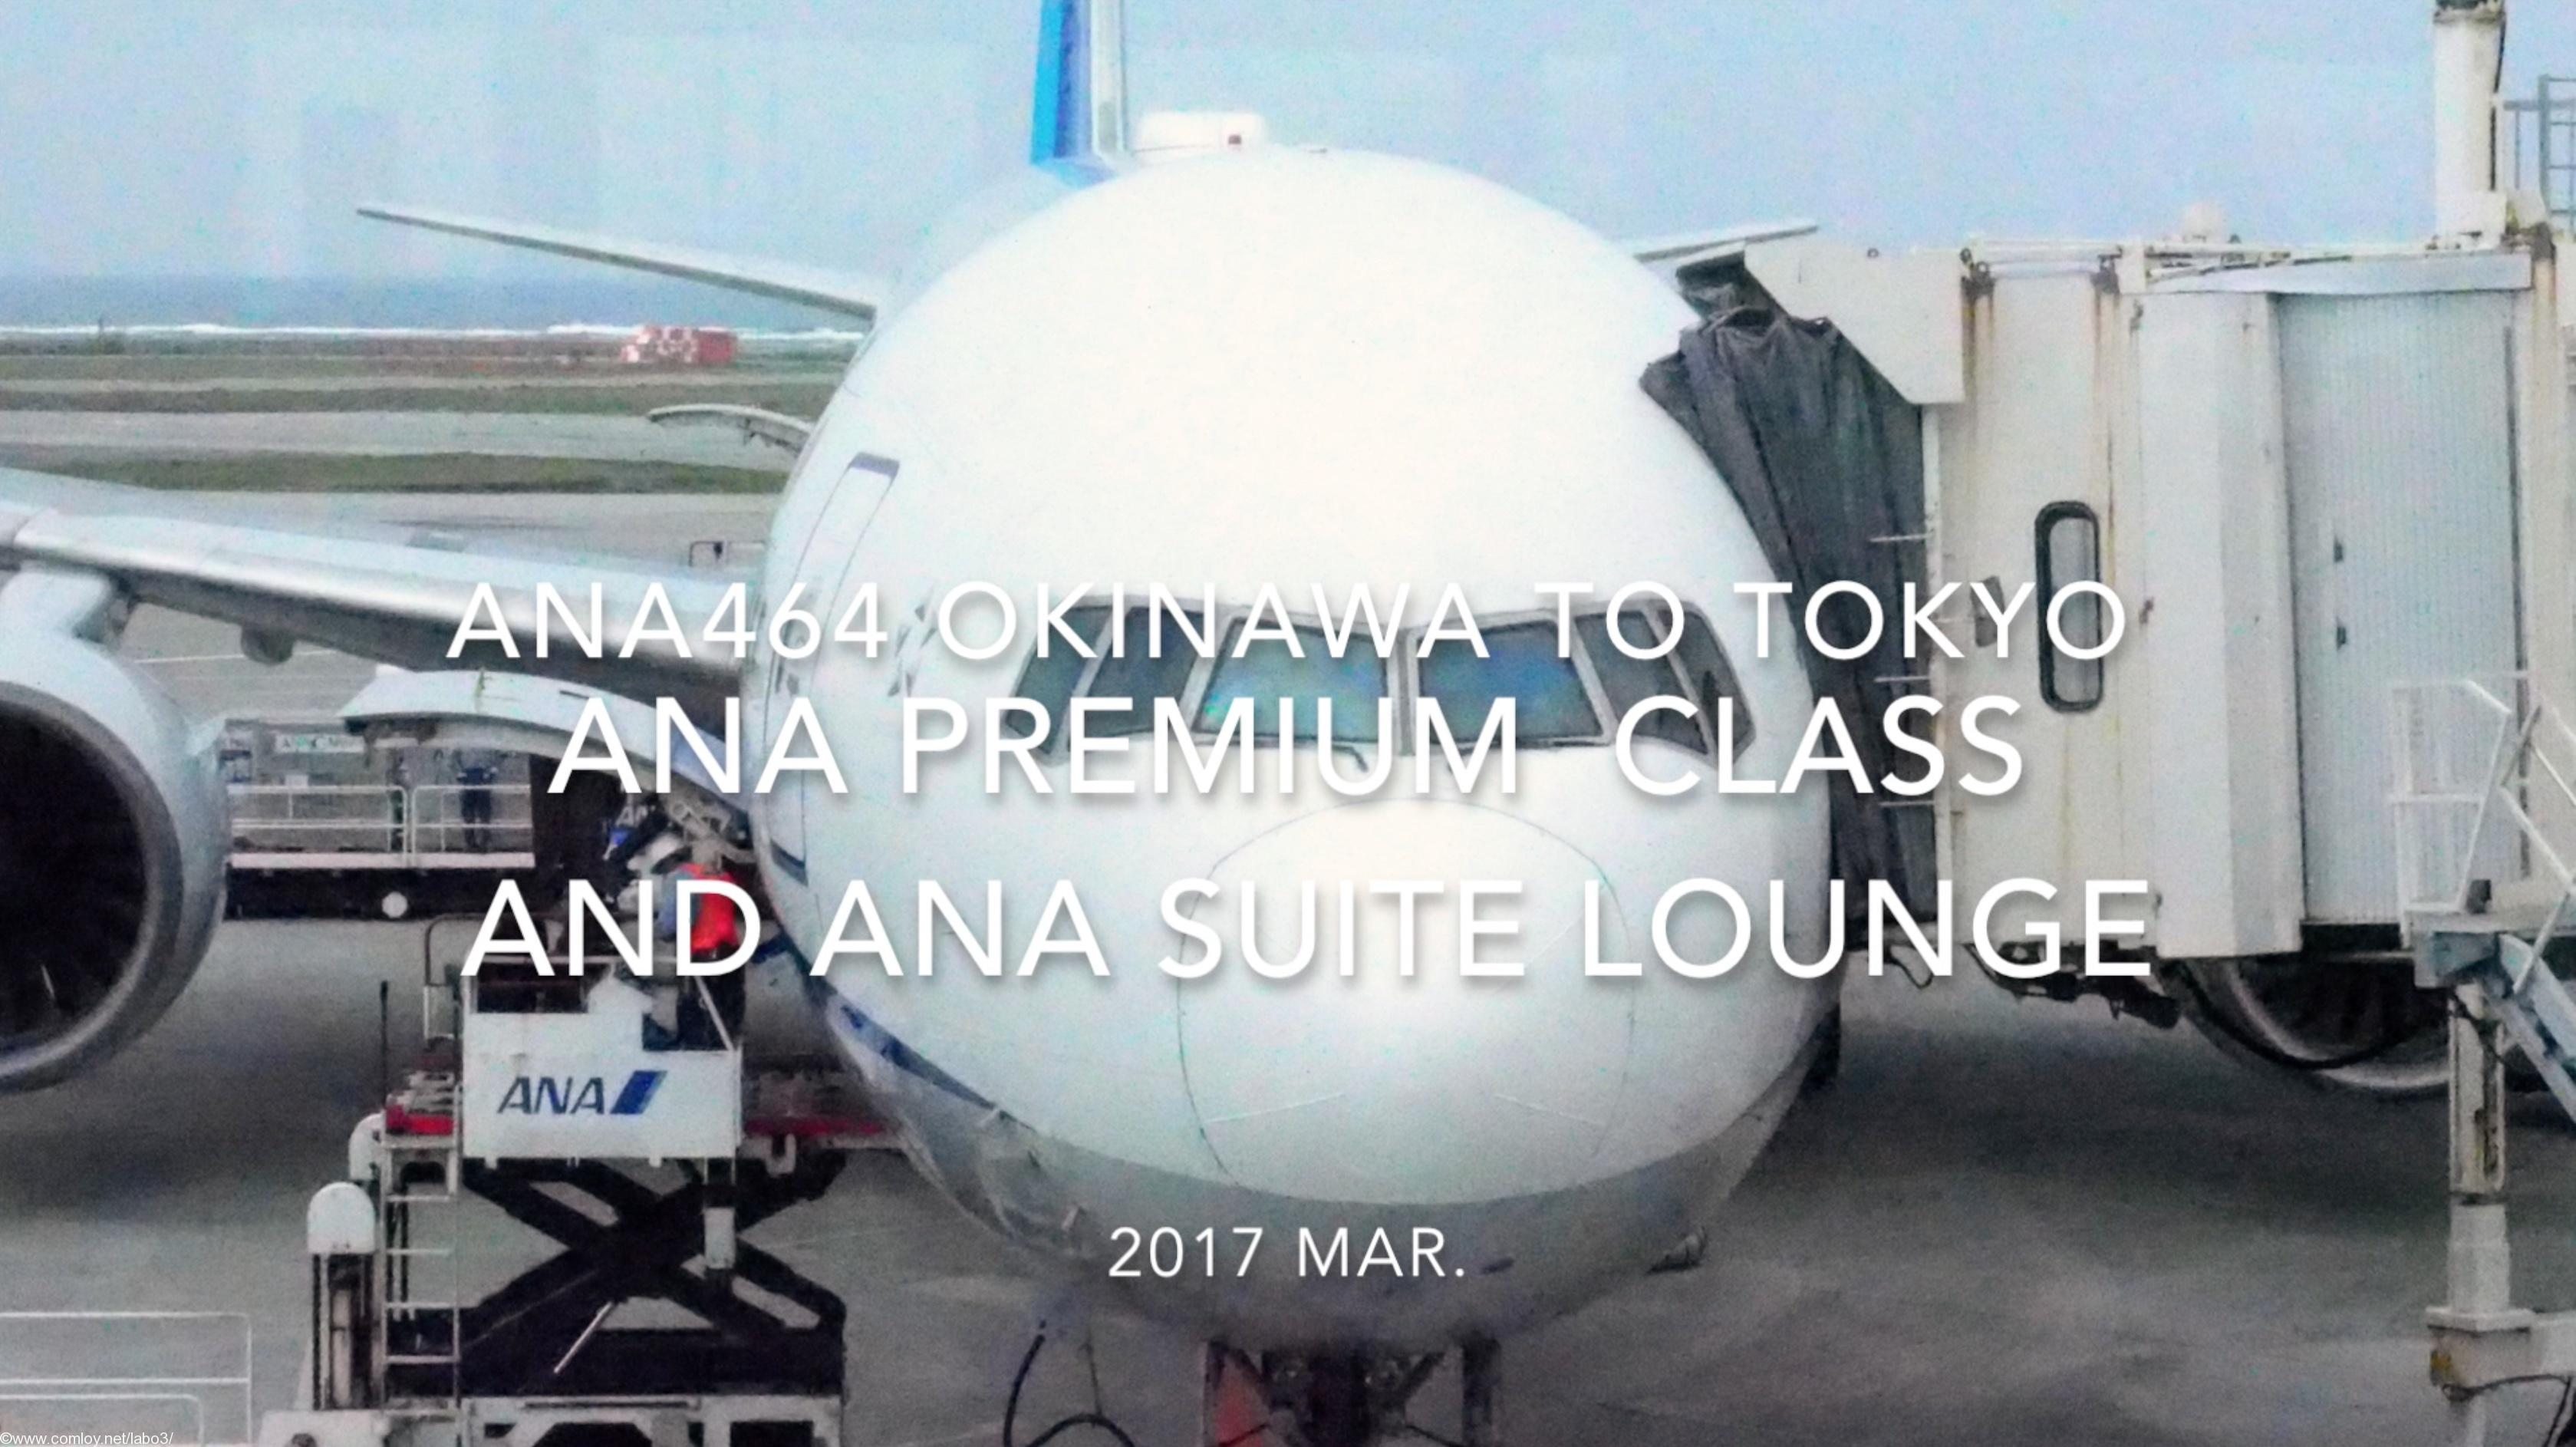 【Flight Report】ANA Premium Class and ANA SUITE LOUNGE ANA464 OKINAWA to TOKYO 2017・03 全日空プレミアムクラス搭乗記